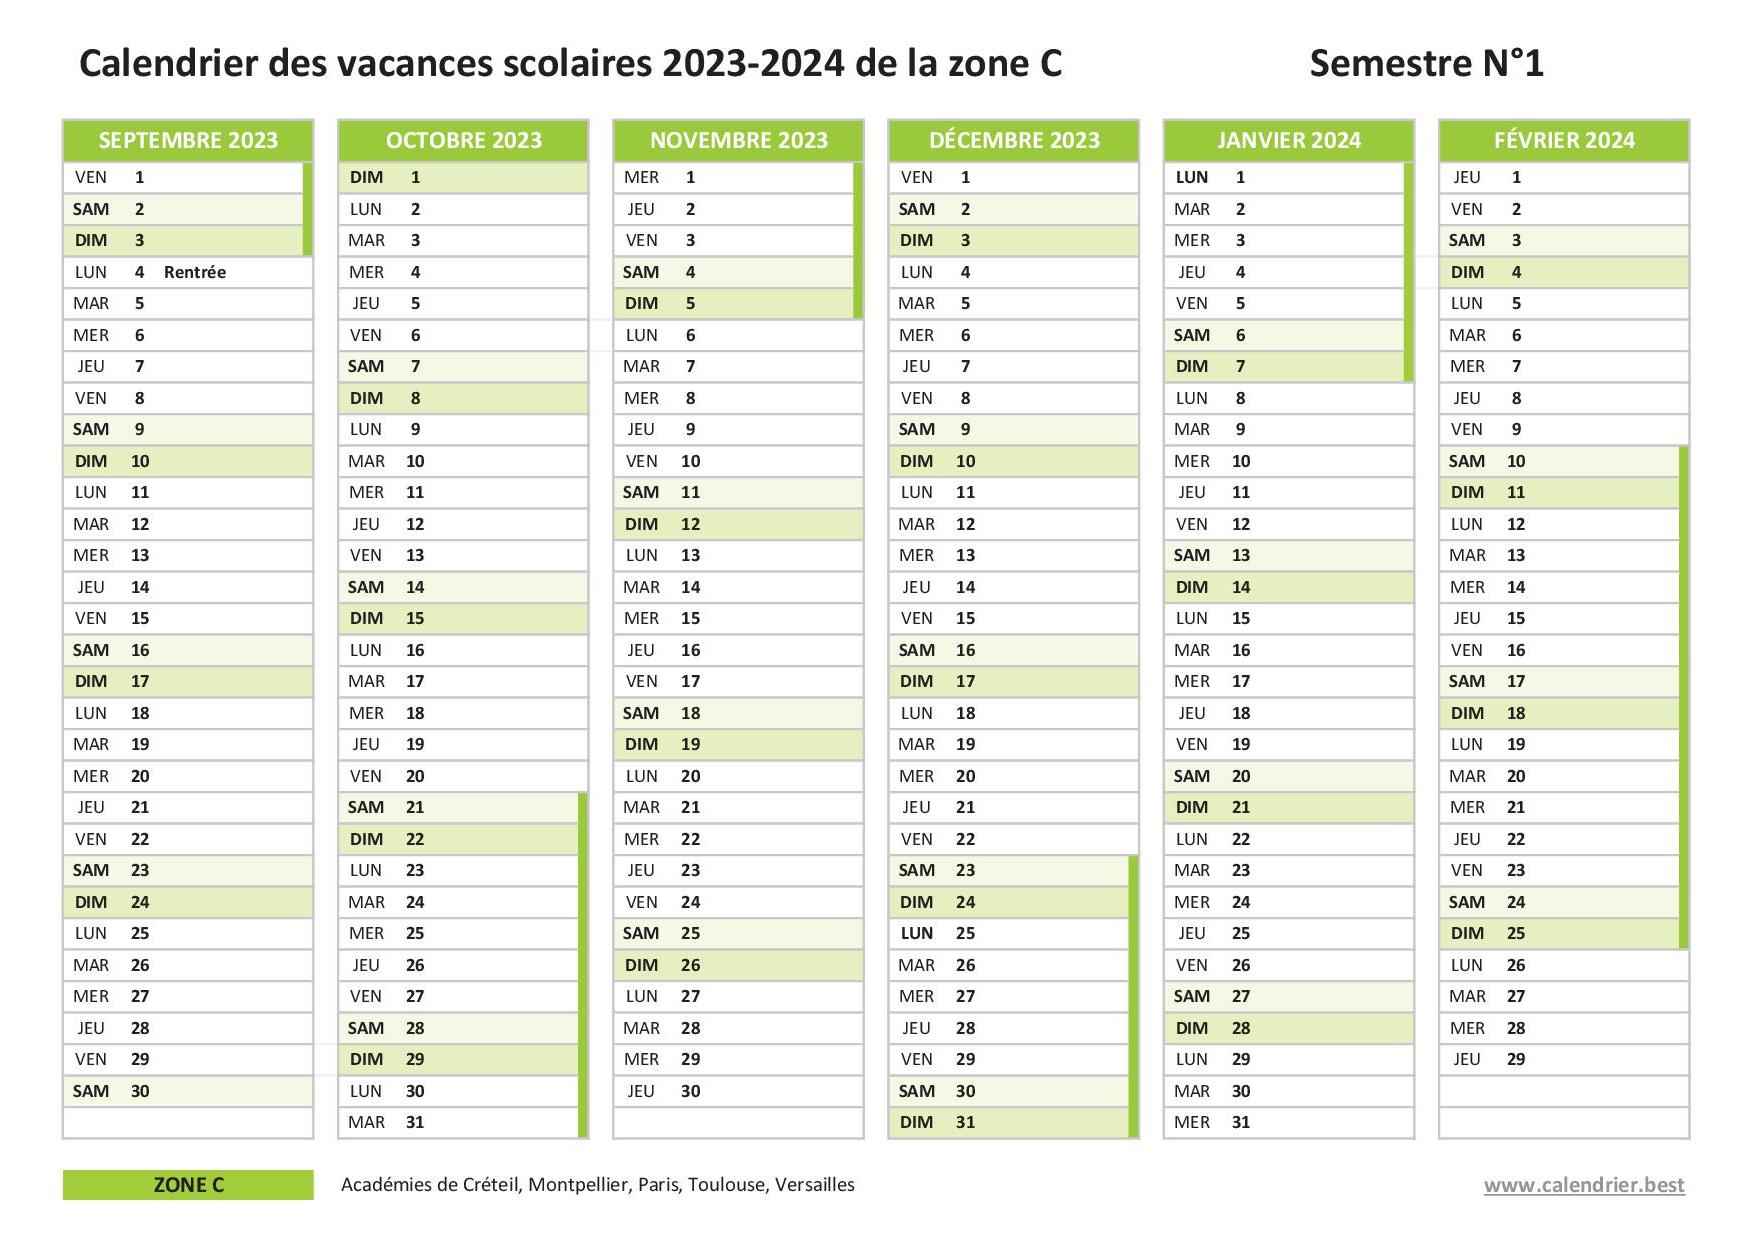 Calendrier scolaire 2023-2024 à consulter, télécharger et imprimer en pdf